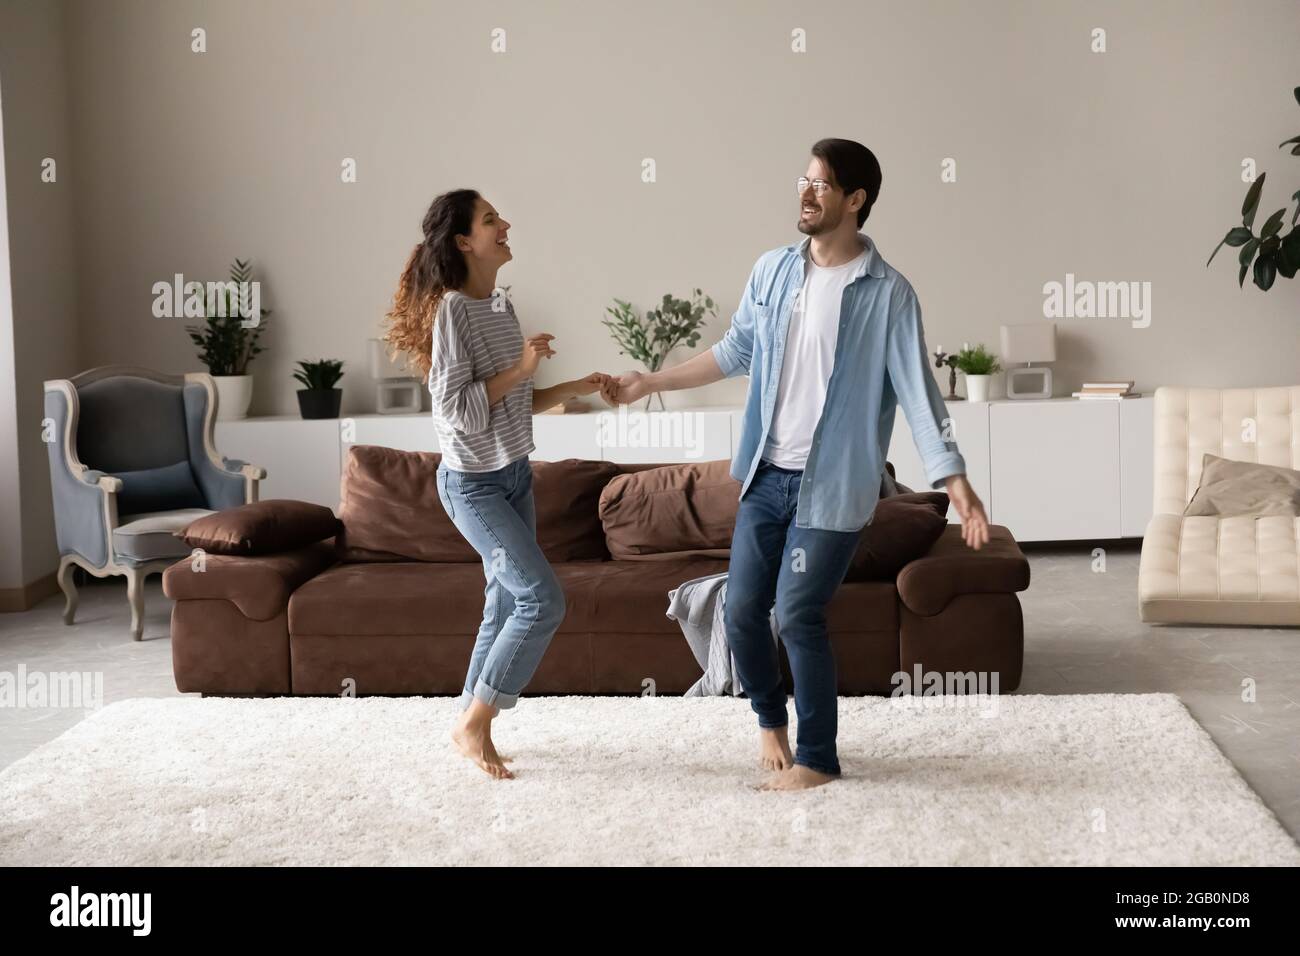 Glücklich aufgeregt Millennial Paar tanzen zusammen im Wohnzimmer Stockfoto